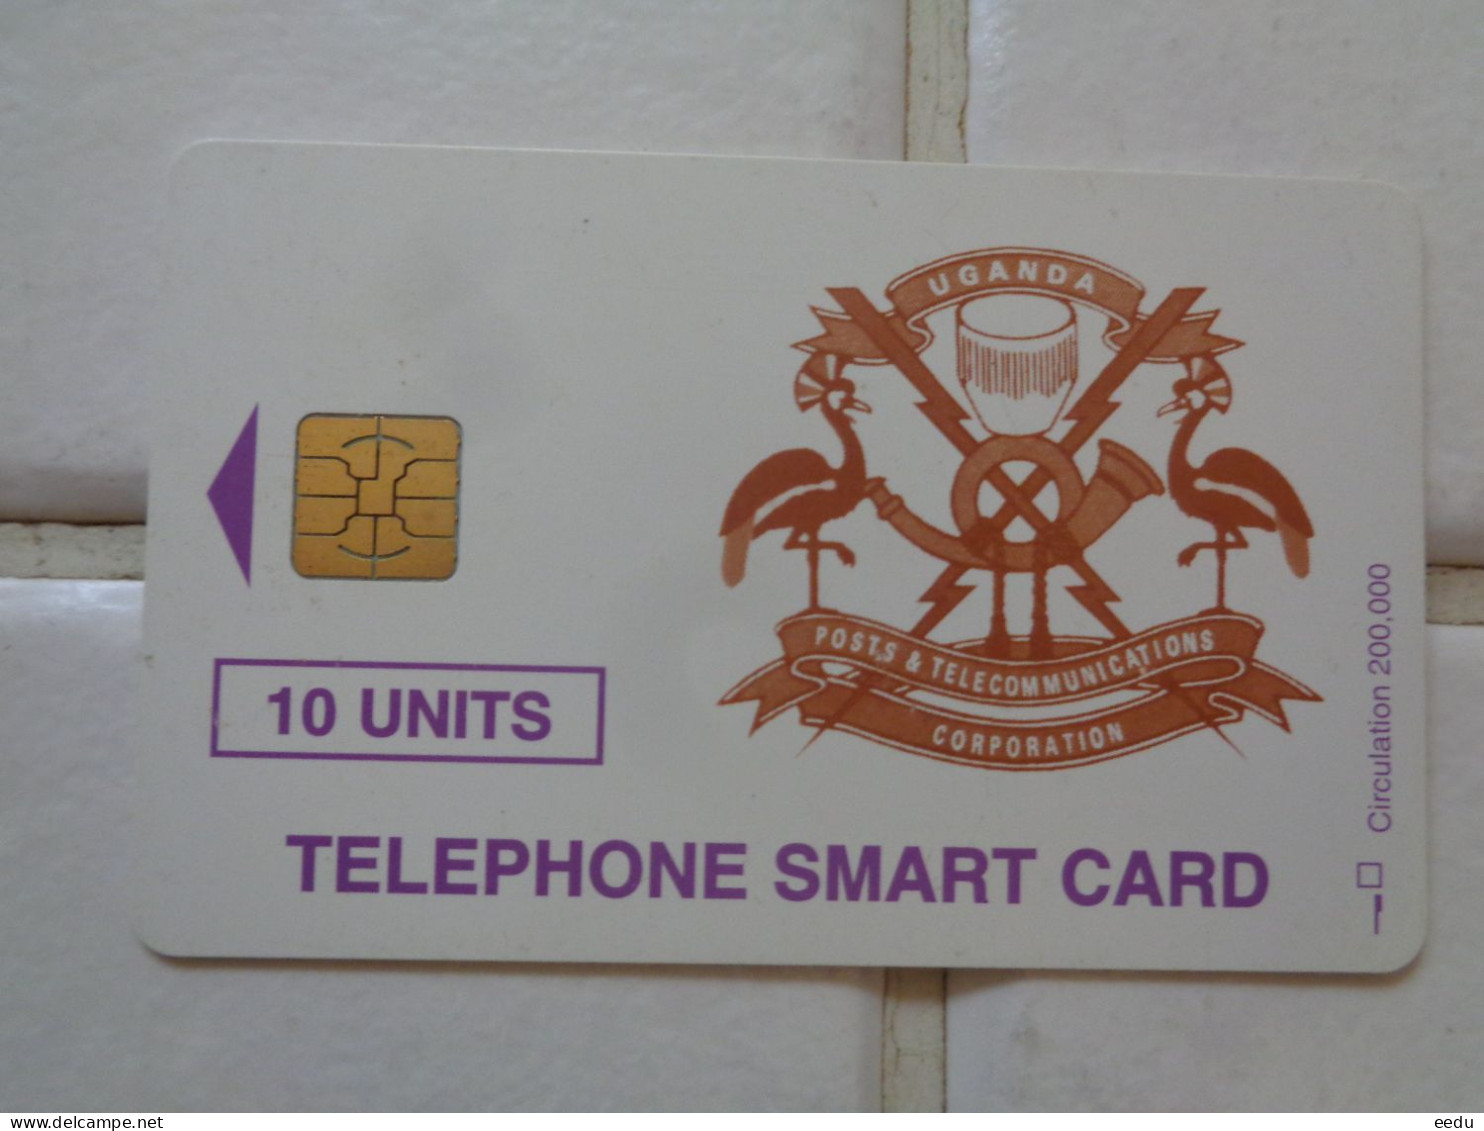 Uganda Phonecard - Ouganda